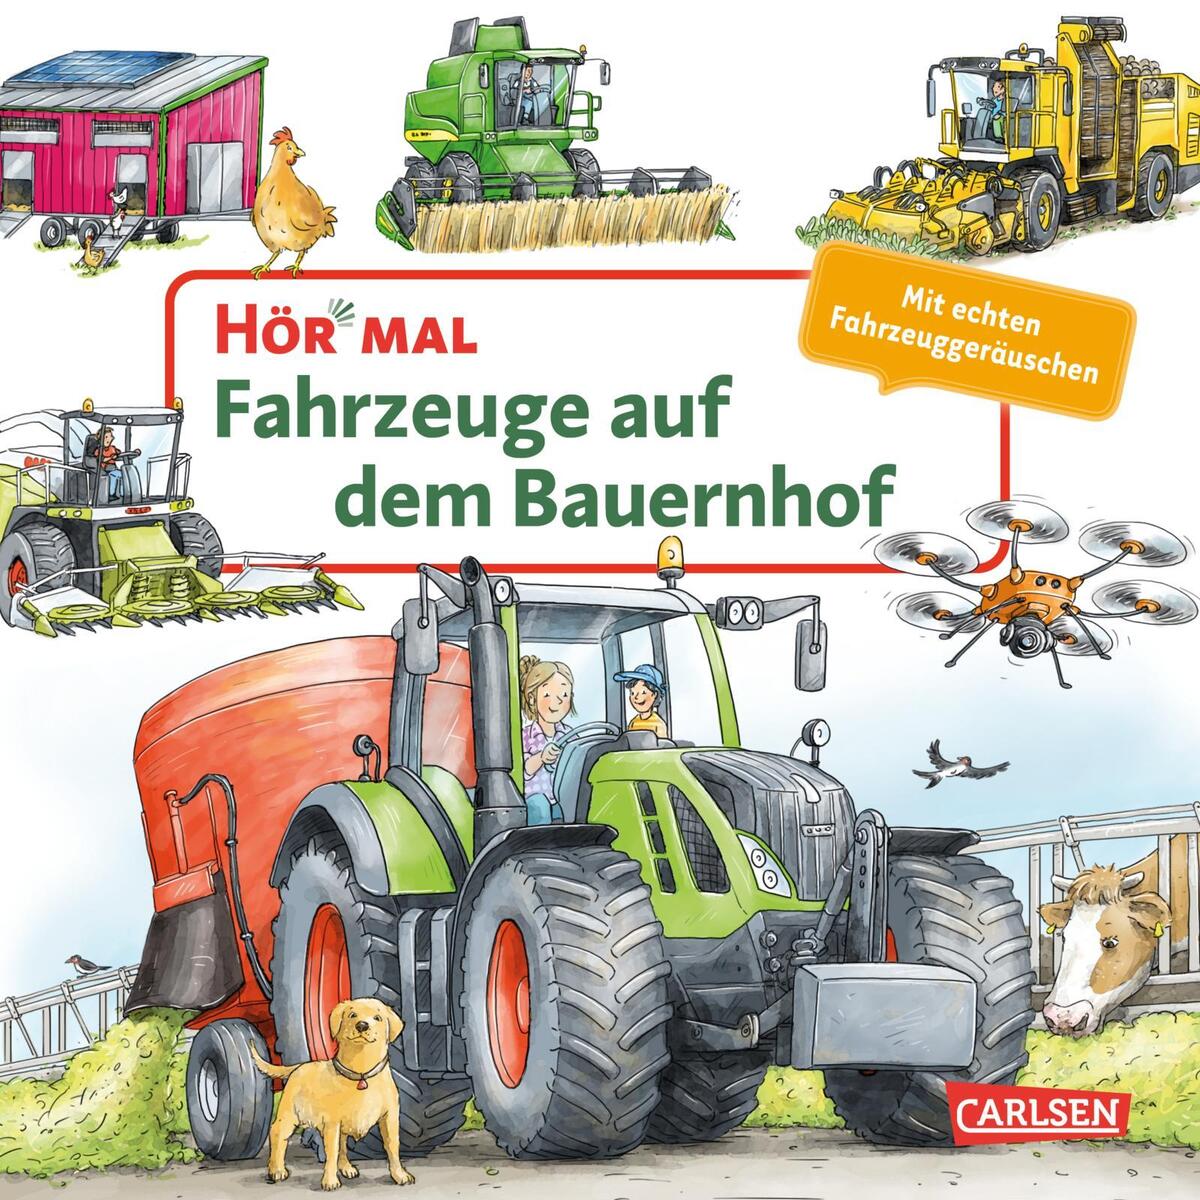 Hör mal (Soundbuch): Fahrzeuge auf dem Bauernhof von Carlsen Verlag GmbH